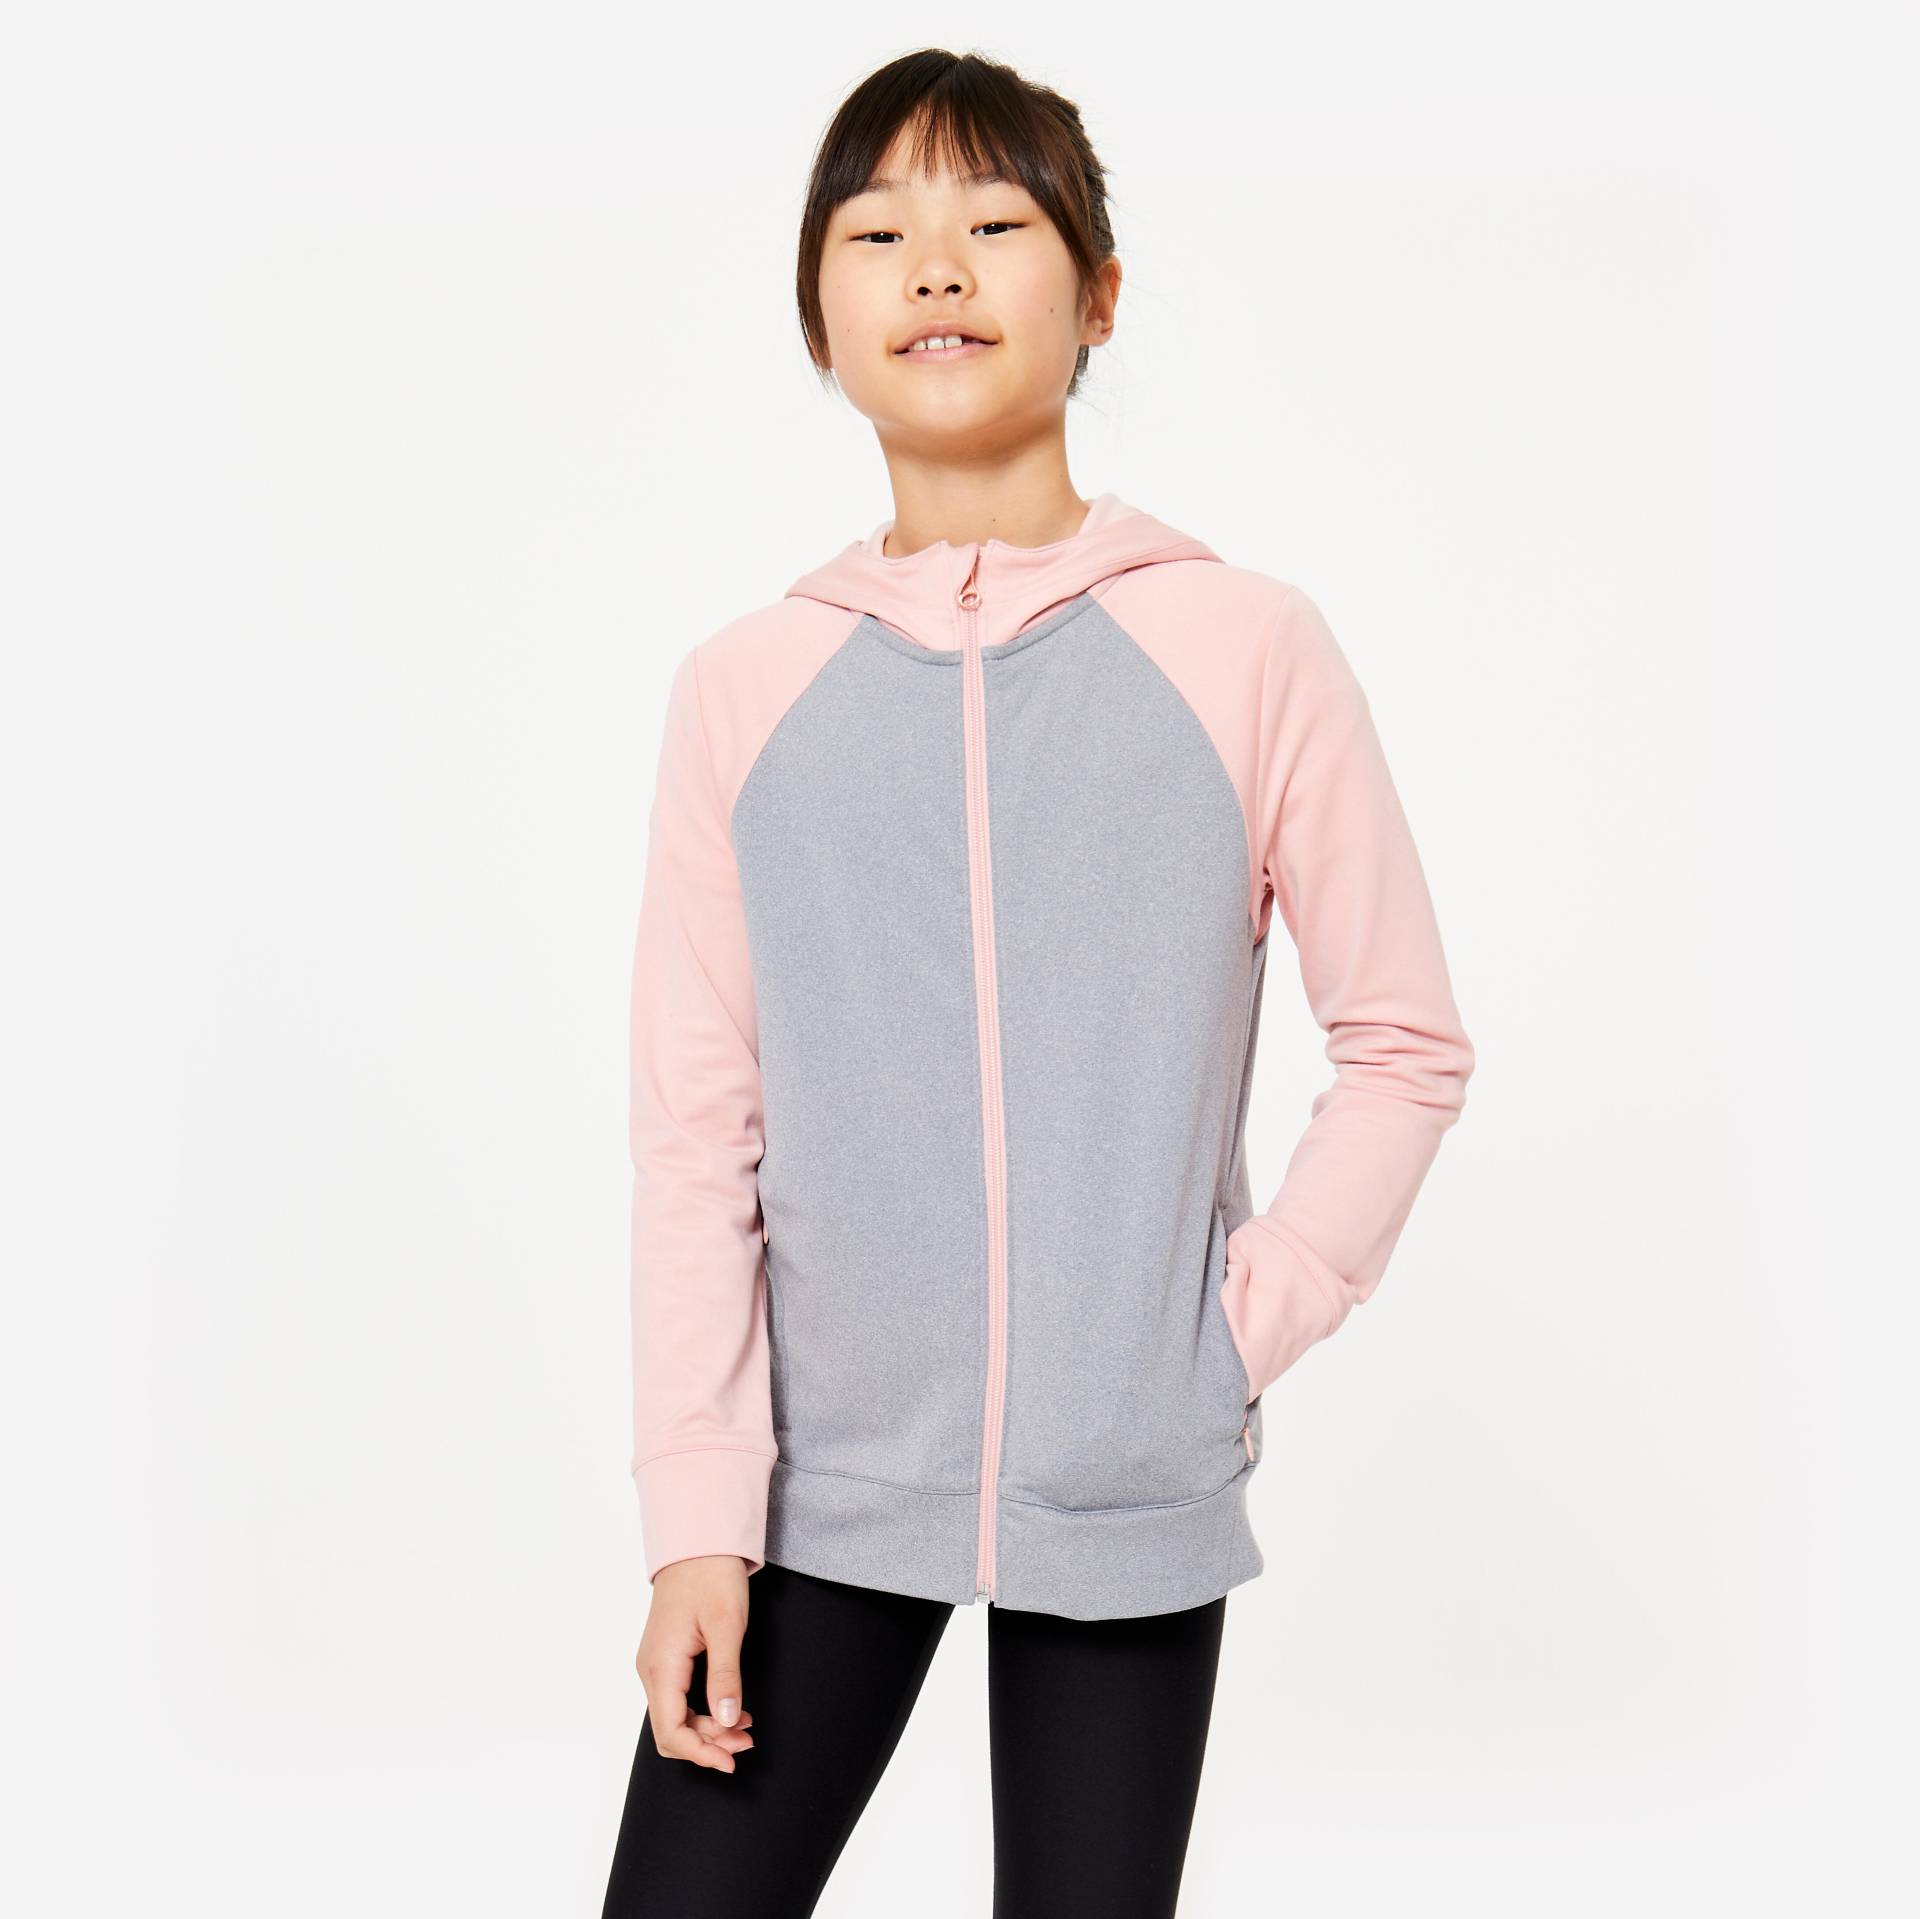 Trainingsjacke Mädchen warm - S500 rosa/grau von Domyos